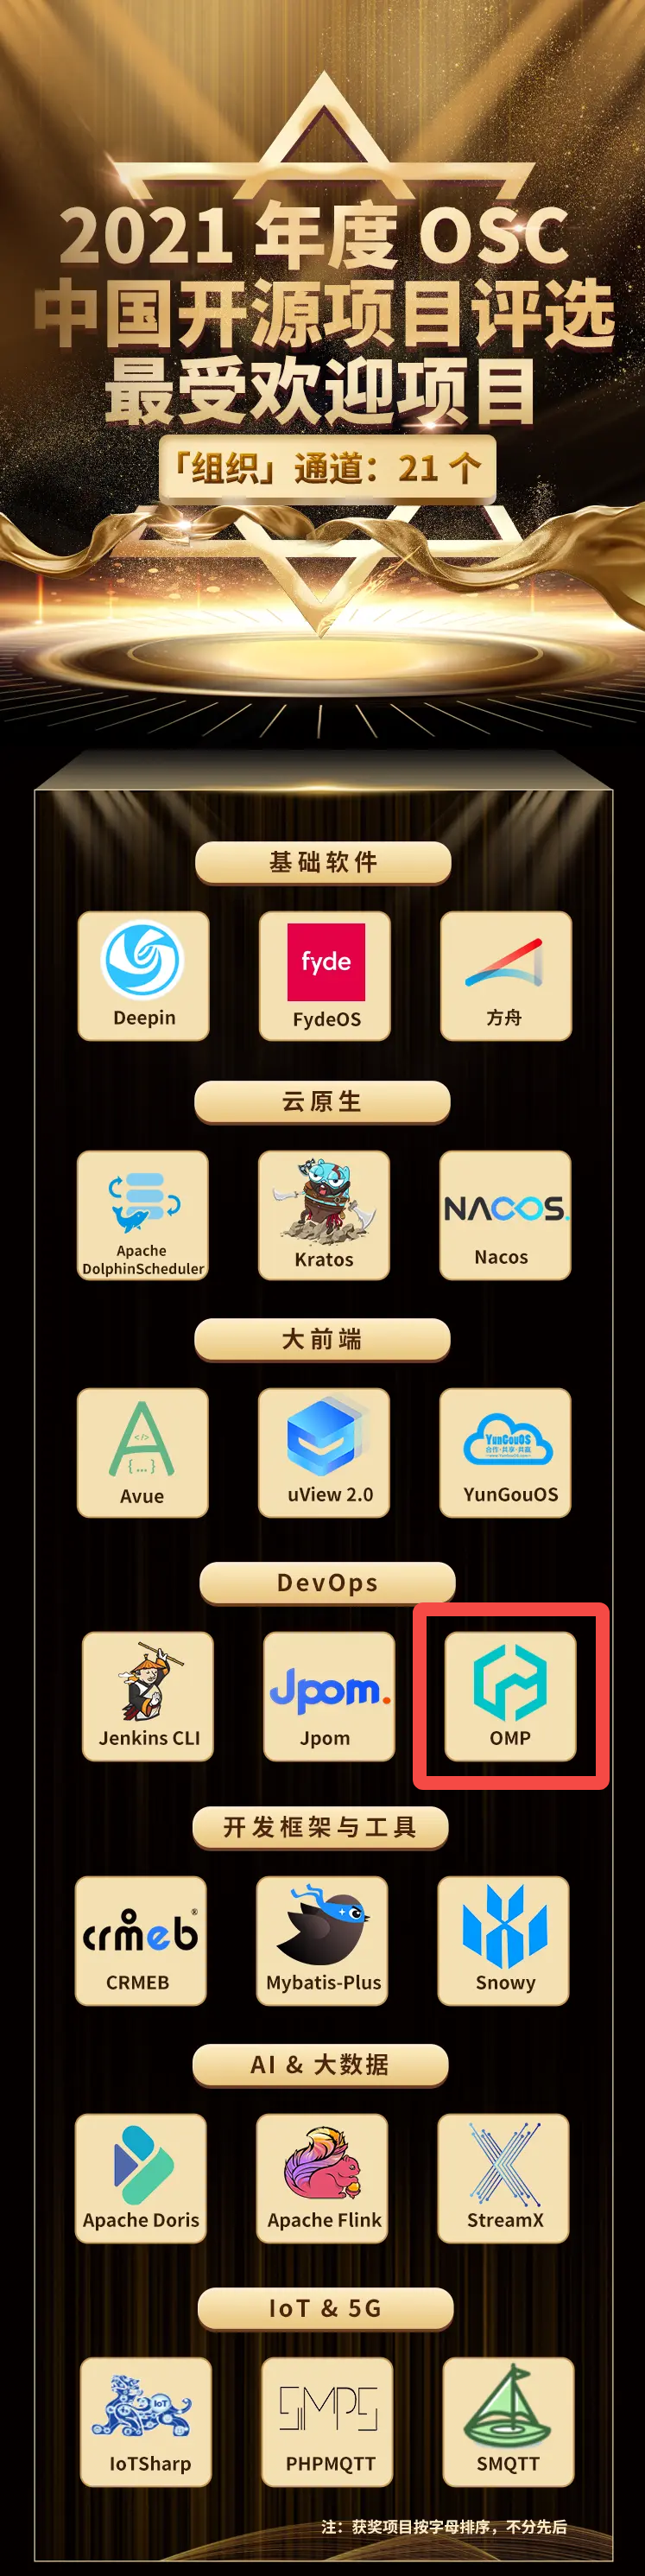 云智慧运维管理平台OMP荣获OSC中国开源项目评选「最受欢迎项目」奖插图